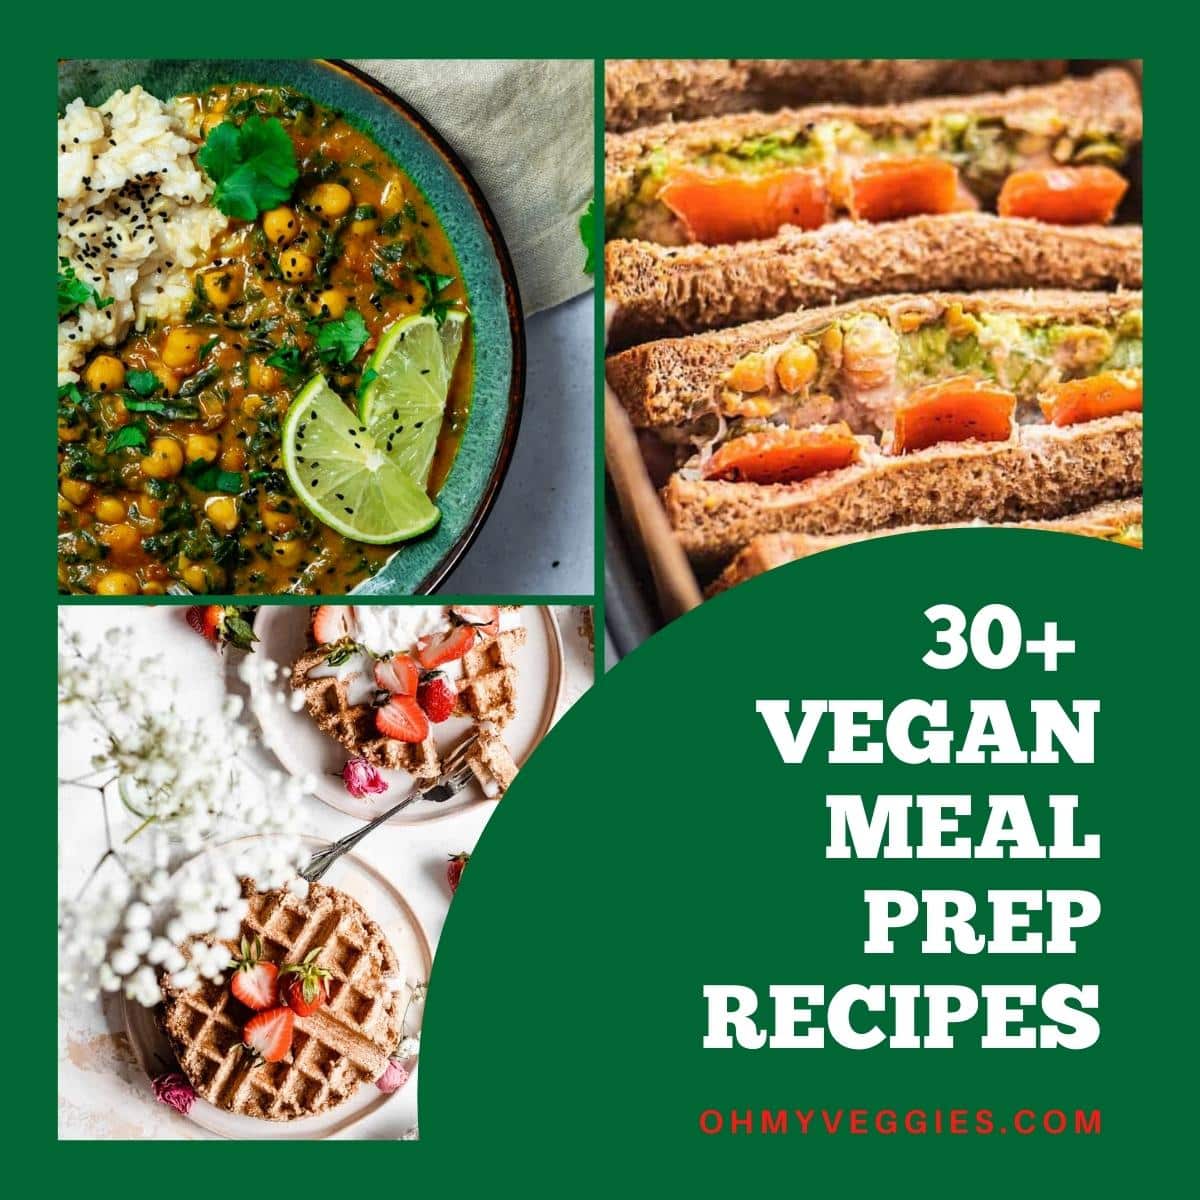 Recetas para la preparación de comidas veganas